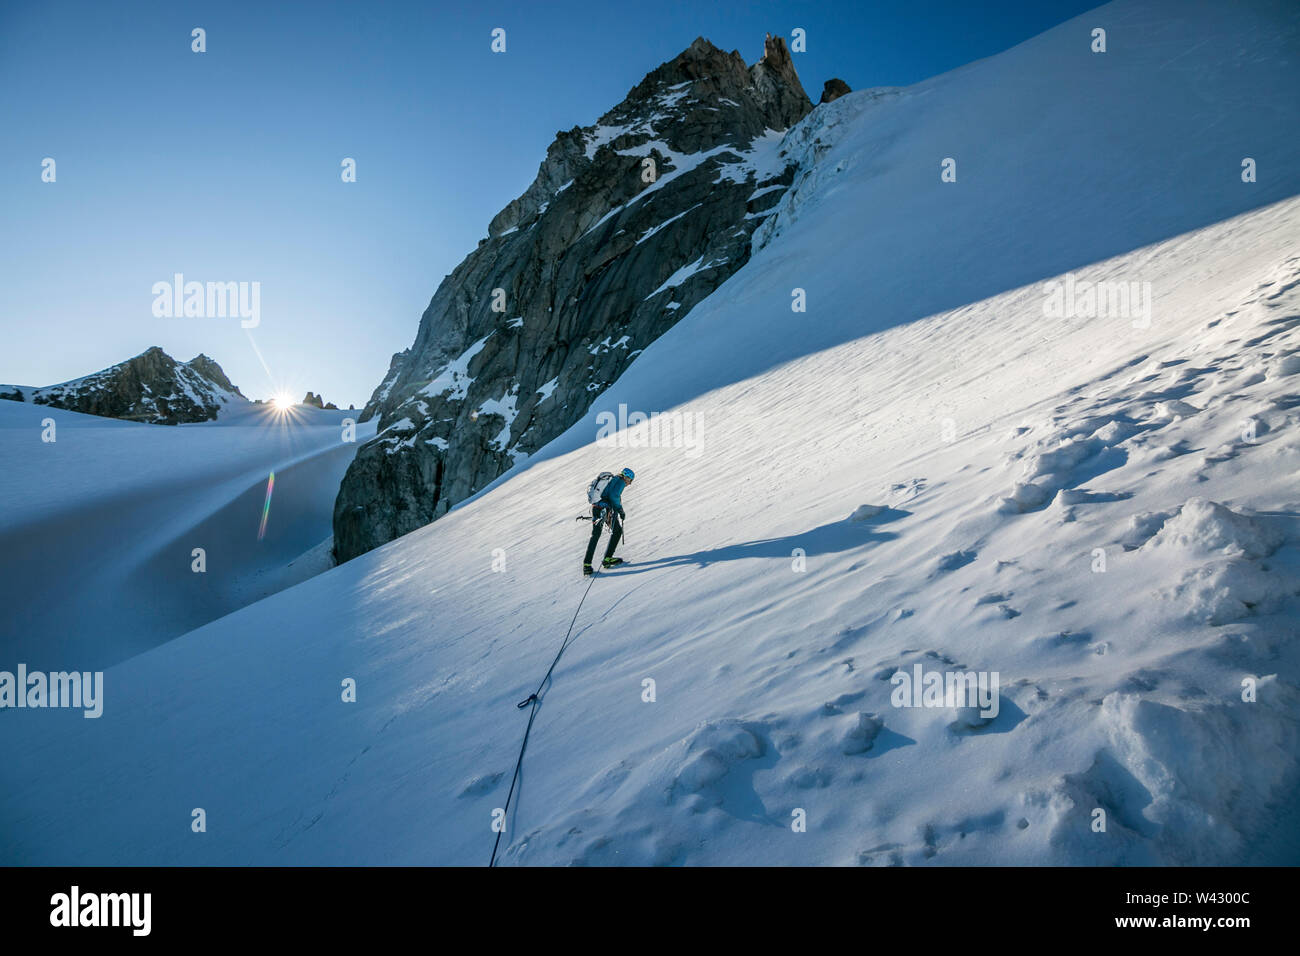 Un alpinista affronta un ripido pendio di neve come il sole creste l'orizzonte Foto Stock